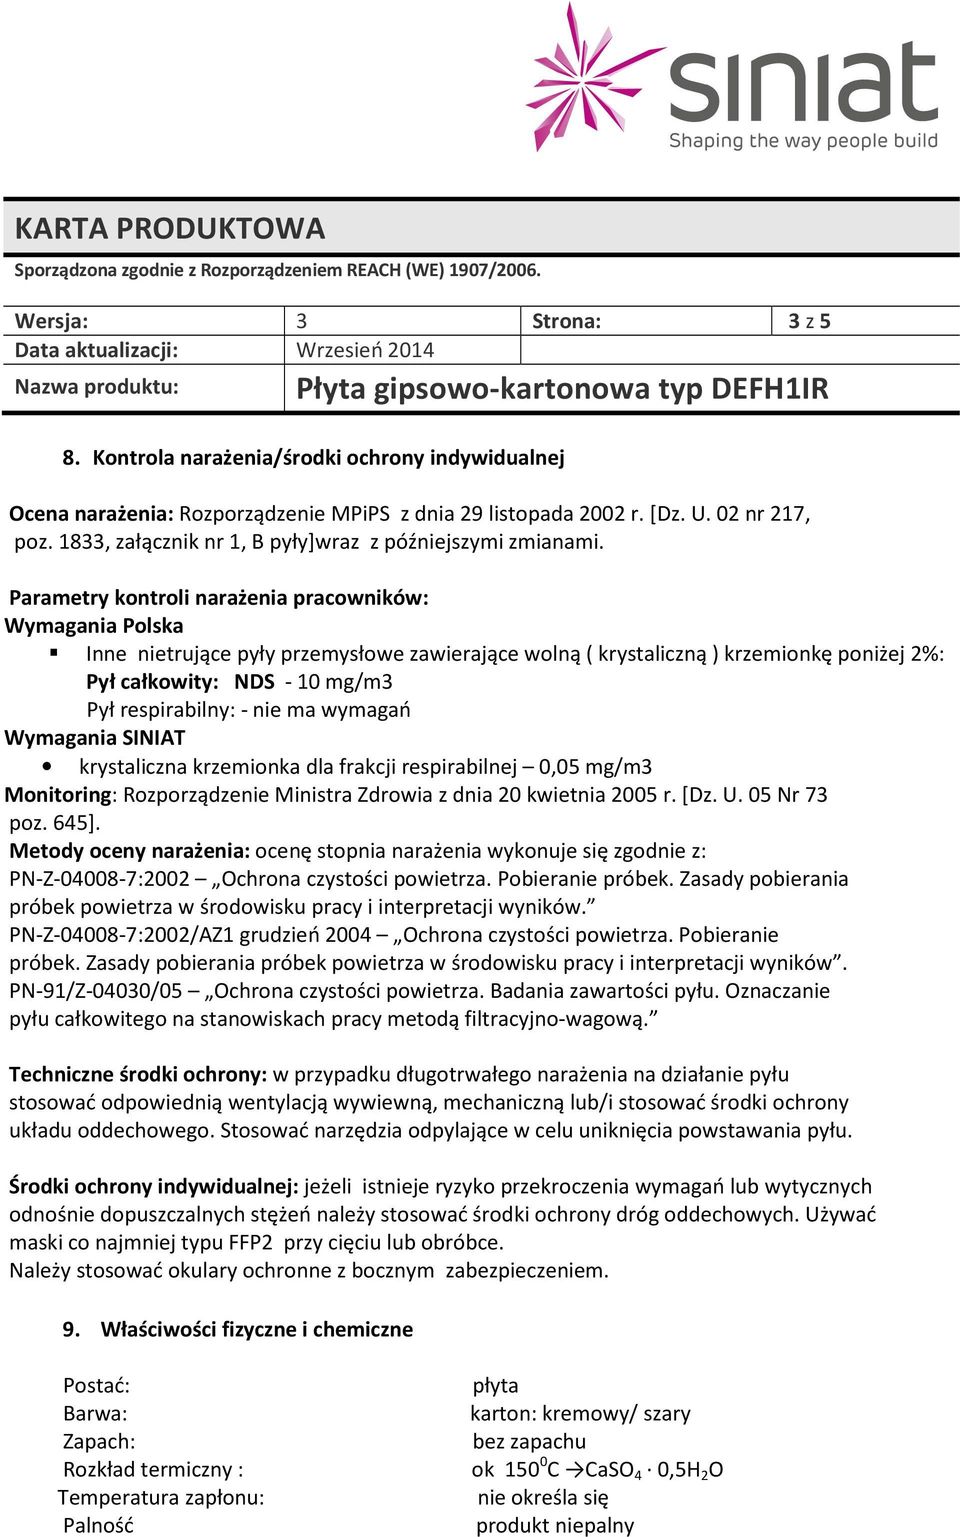 Parametry kontroli narażenia pracowników: Wymagania Polska Inne nietrujące pyły przemysłowe zawierające wolną ( krystaliczną ) krzemionkę poniżej 2%: Pył całkowity: NDS - 10 mg/m3 Pył respirabilny: -